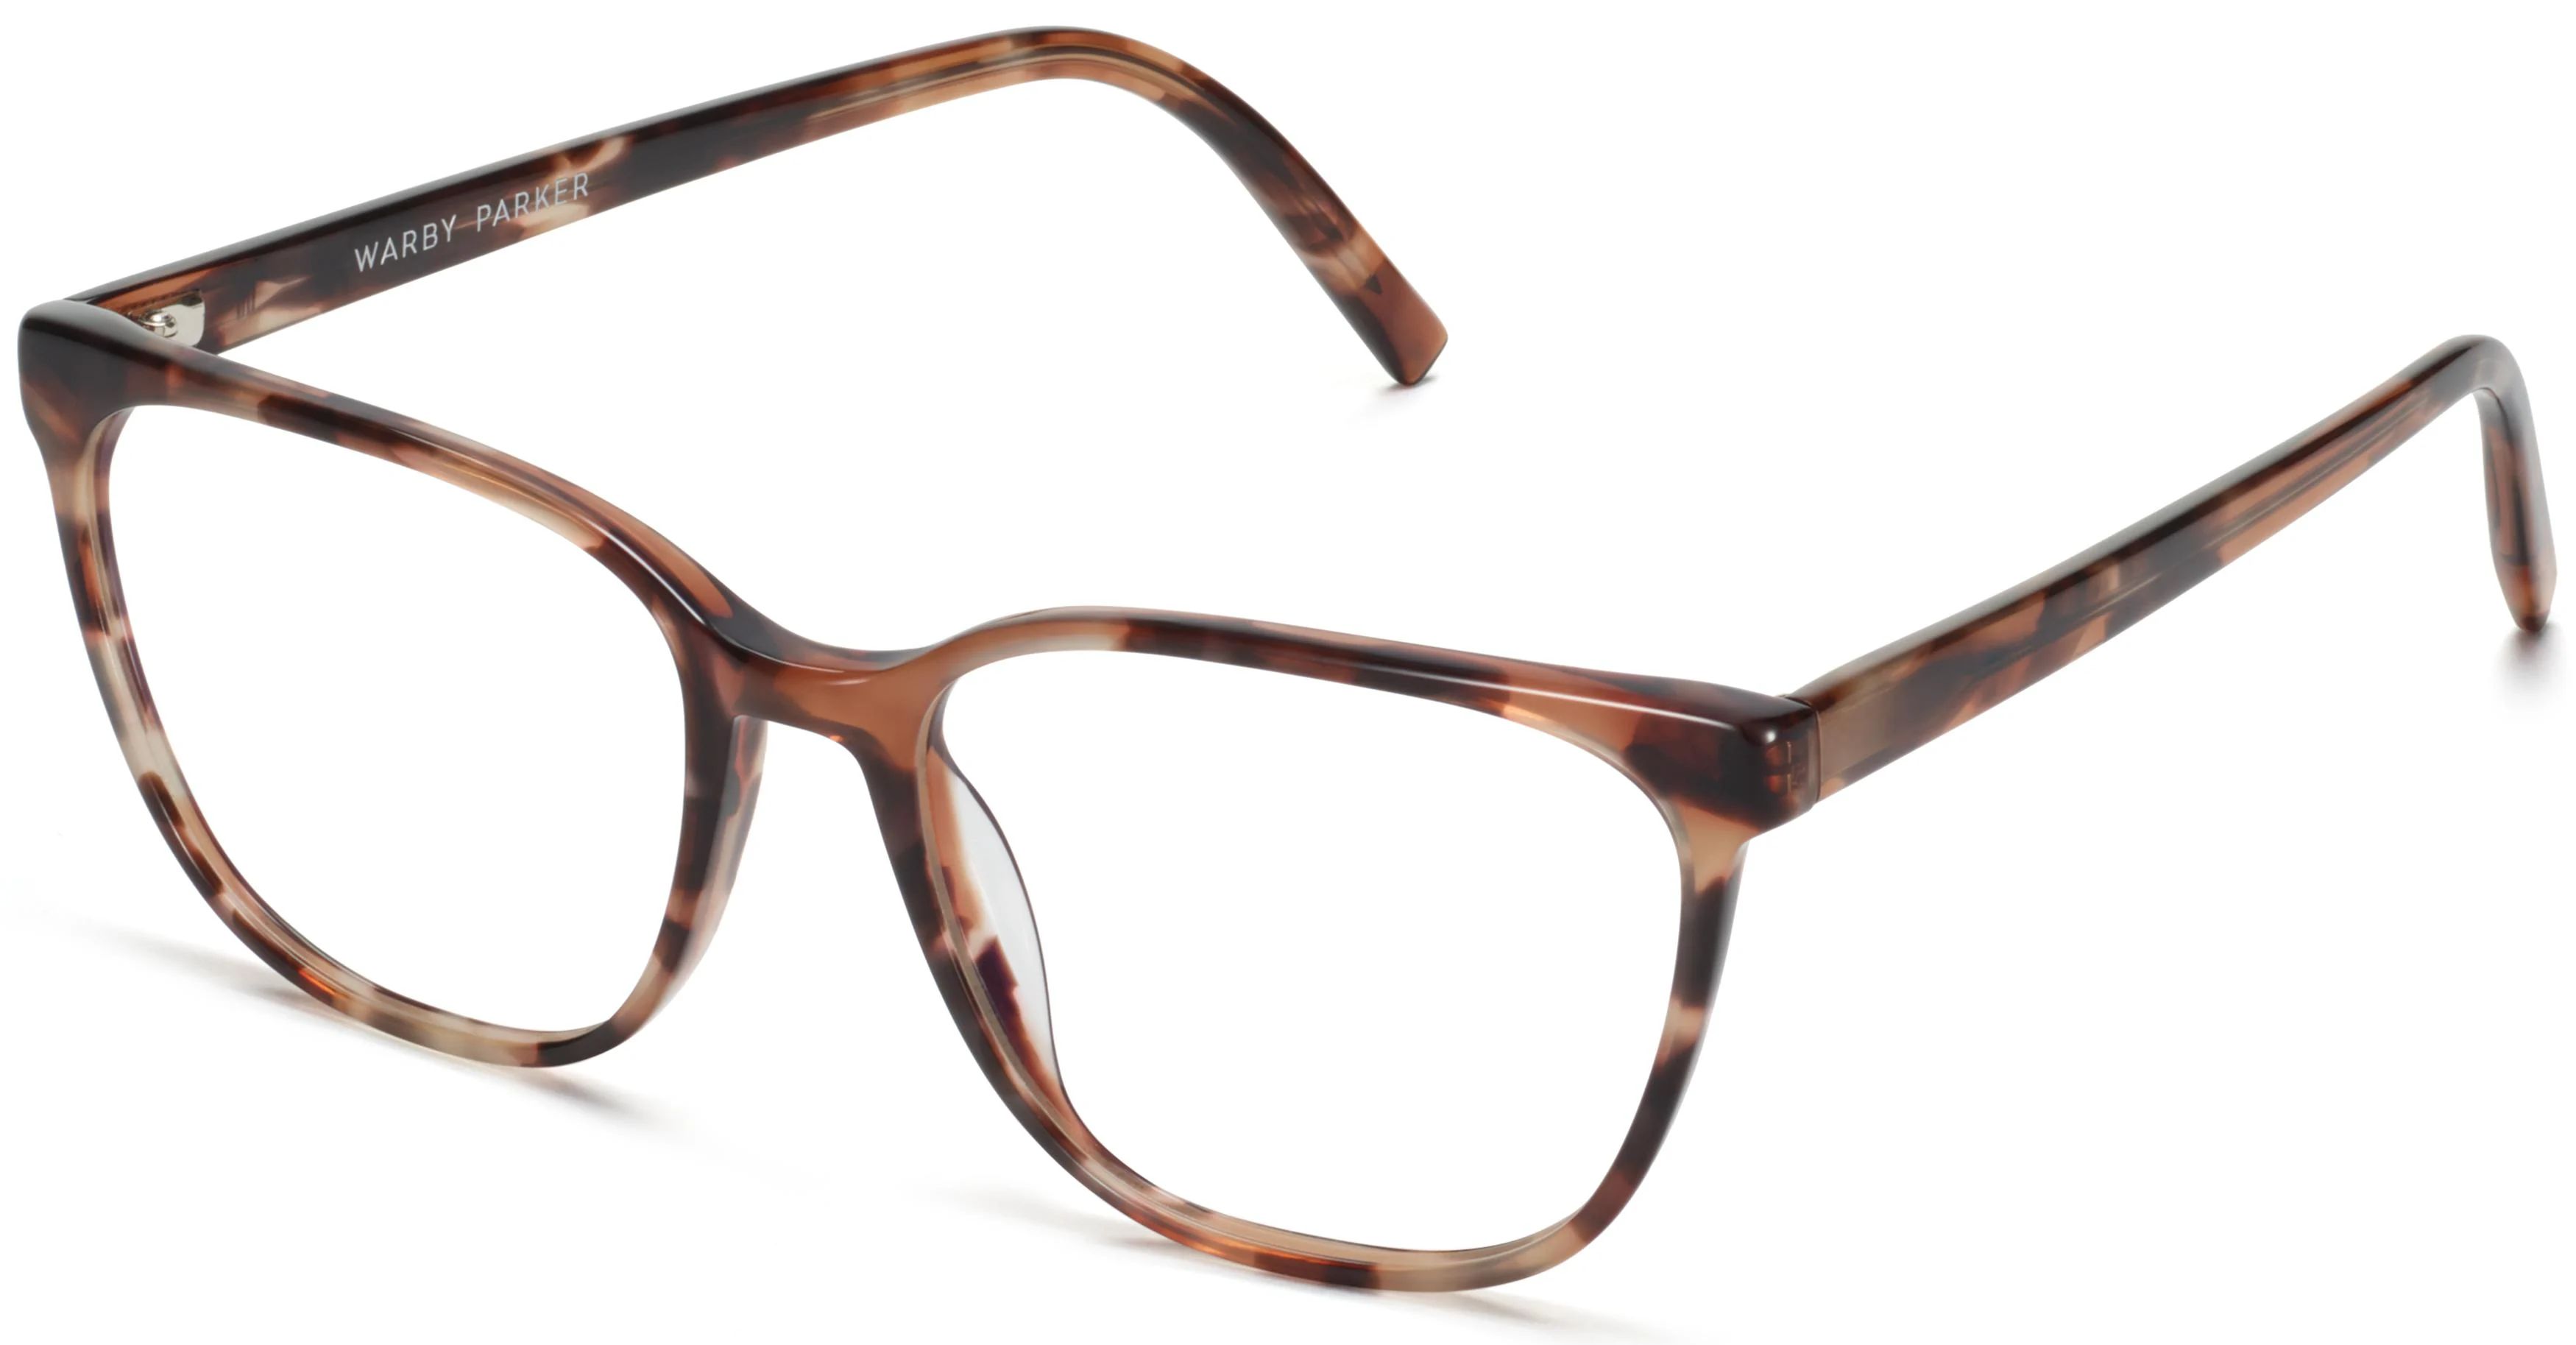 Esme Eyeglasses in Sesame Tortoise | Warby Parker | Warby Parker (US)